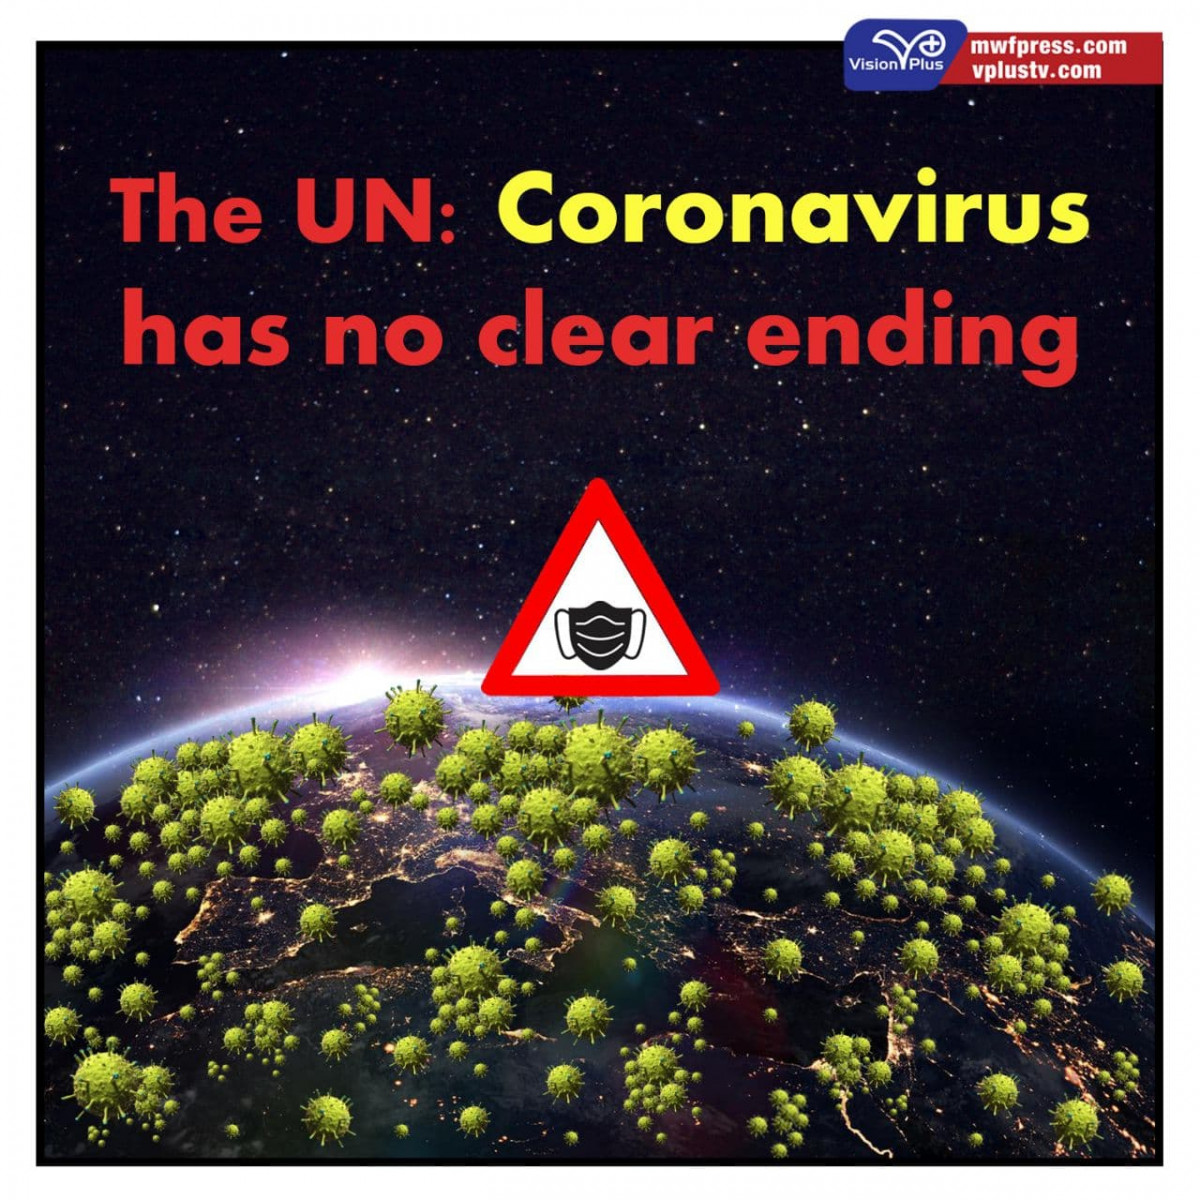 The UN: Coronavirus has no clear ending